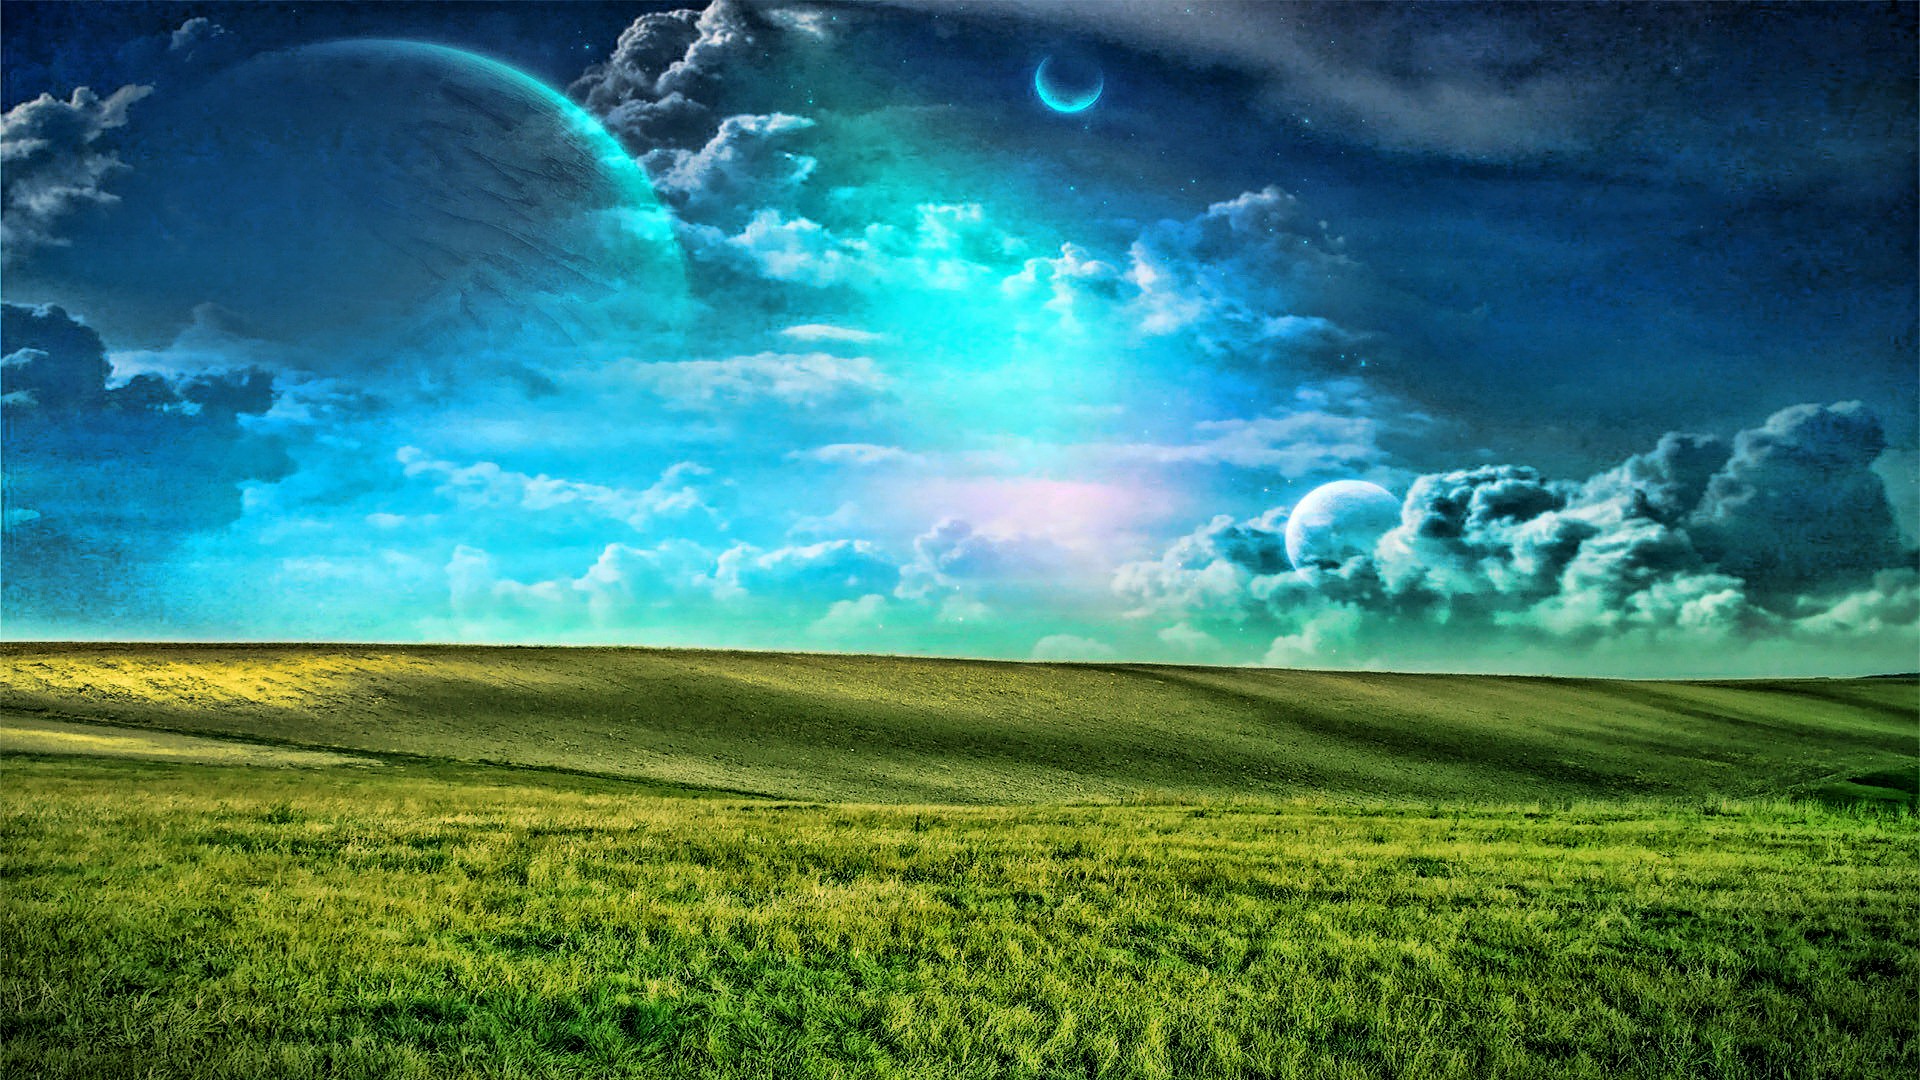 clouds, planets, grass - desktop wallpaper